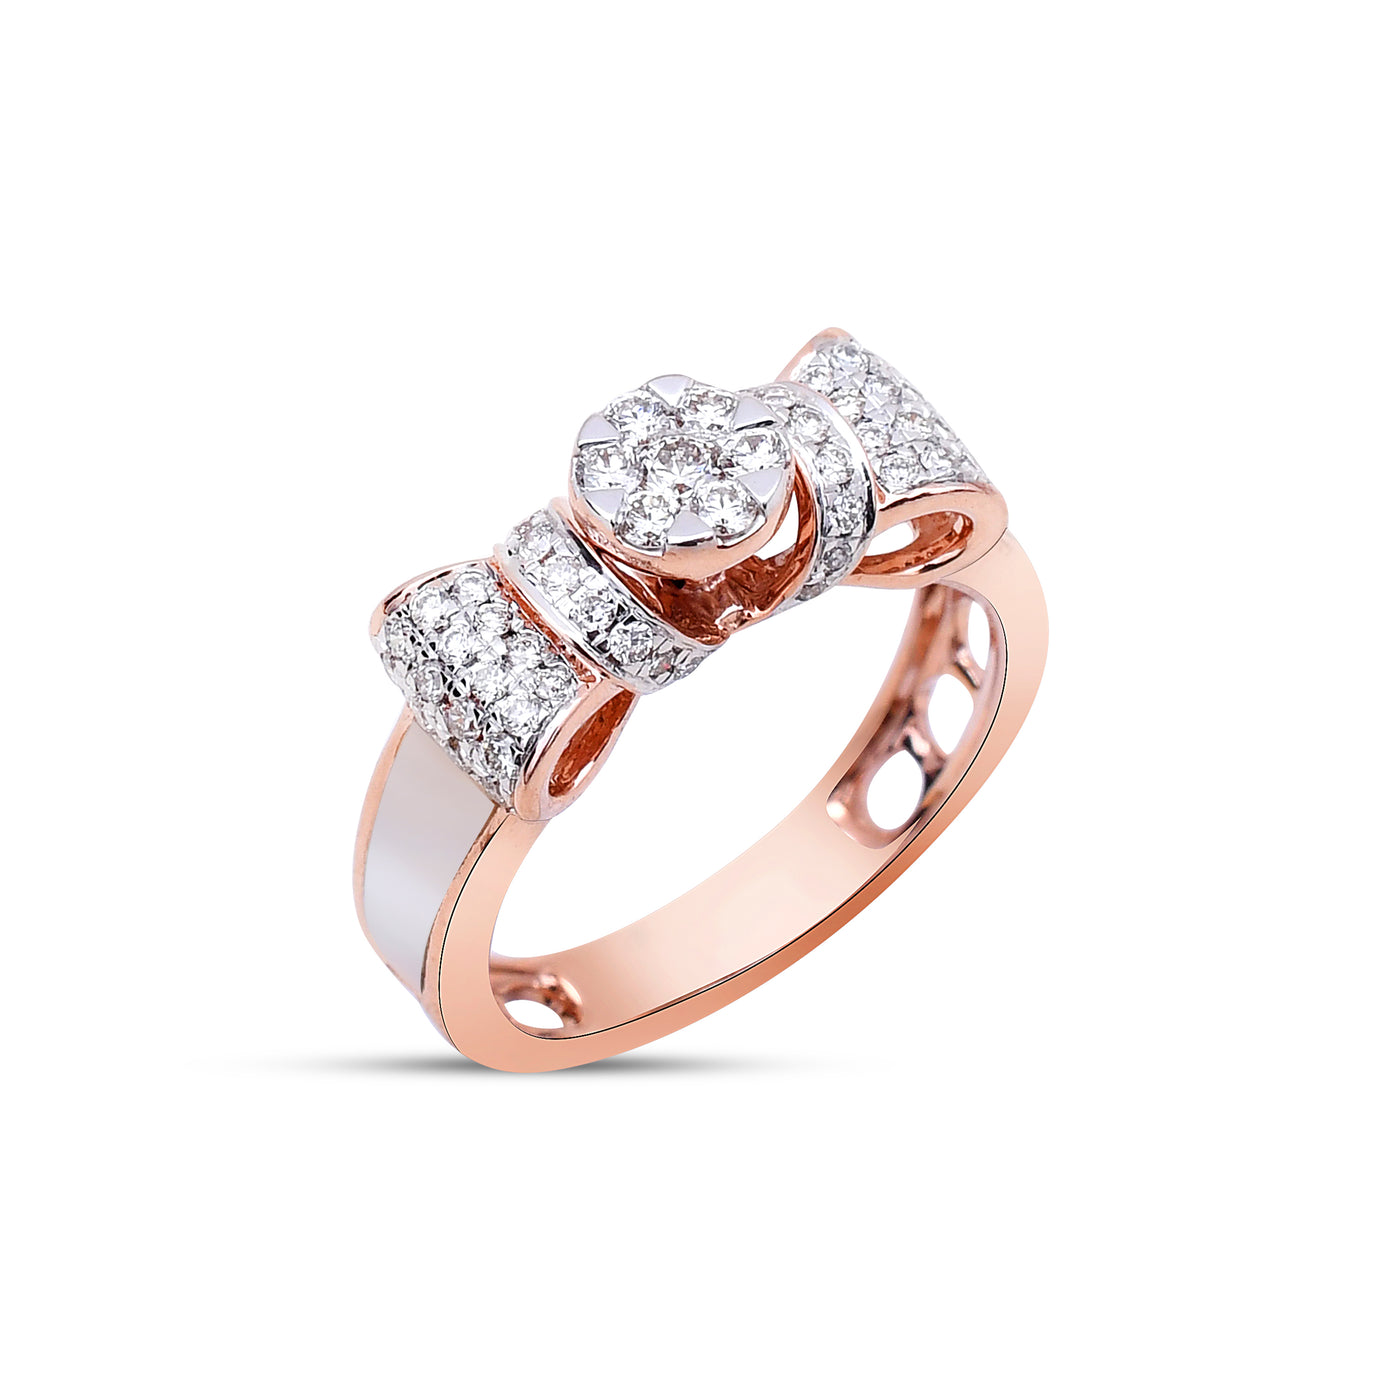 The Rose Ribbon Diamond Ring